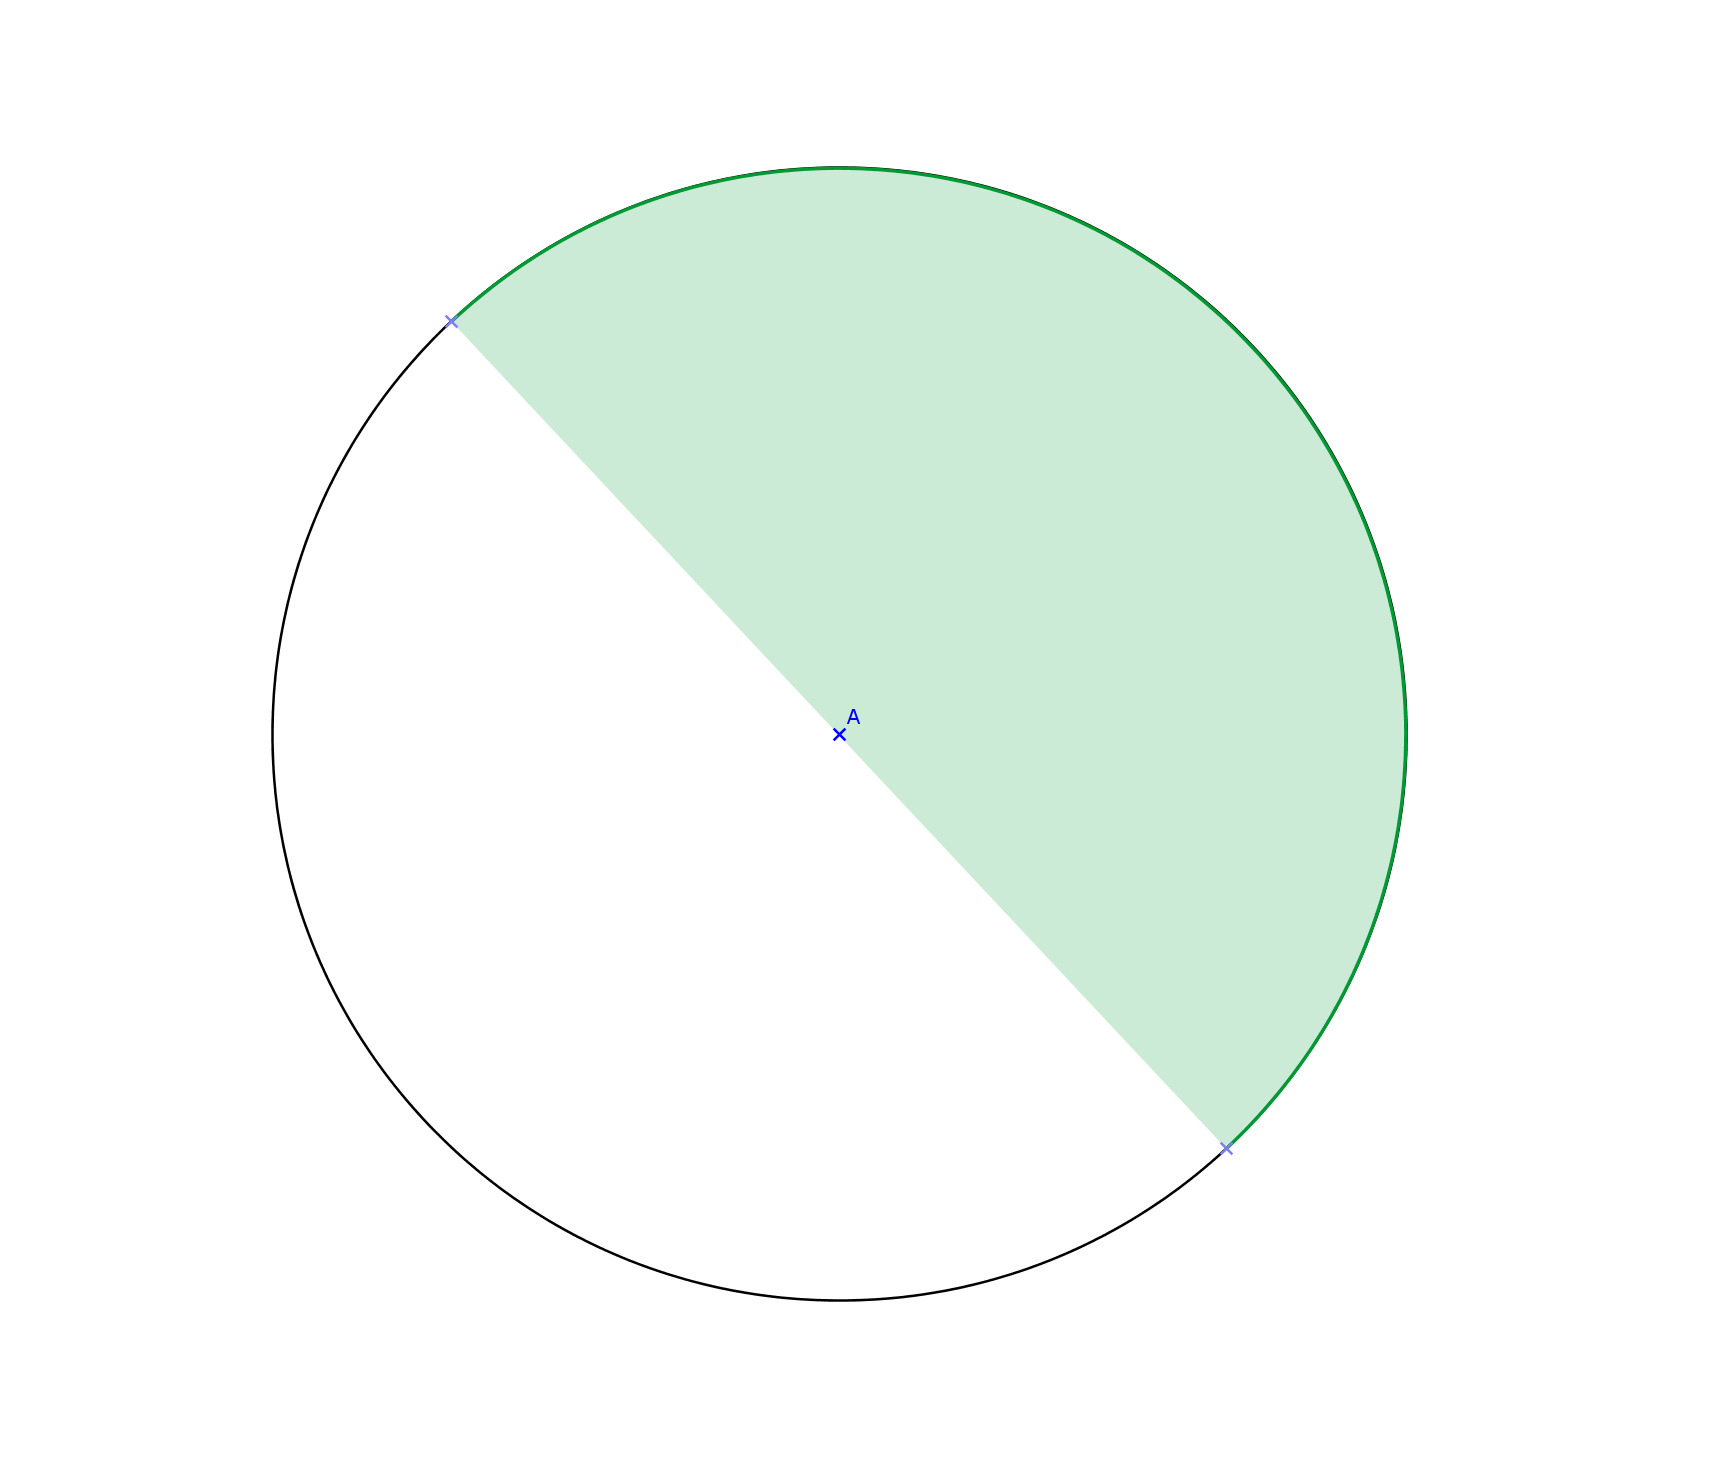 Vasen ympyä on jaettu kahteen yhtä suueen osaan eli kahteen puoliympyään. Oikea ympyä on jaettu yhteen ja kolmeen neljännesympyään. Molempien ympyöitten jakaminen on tehty sektoien avulla.